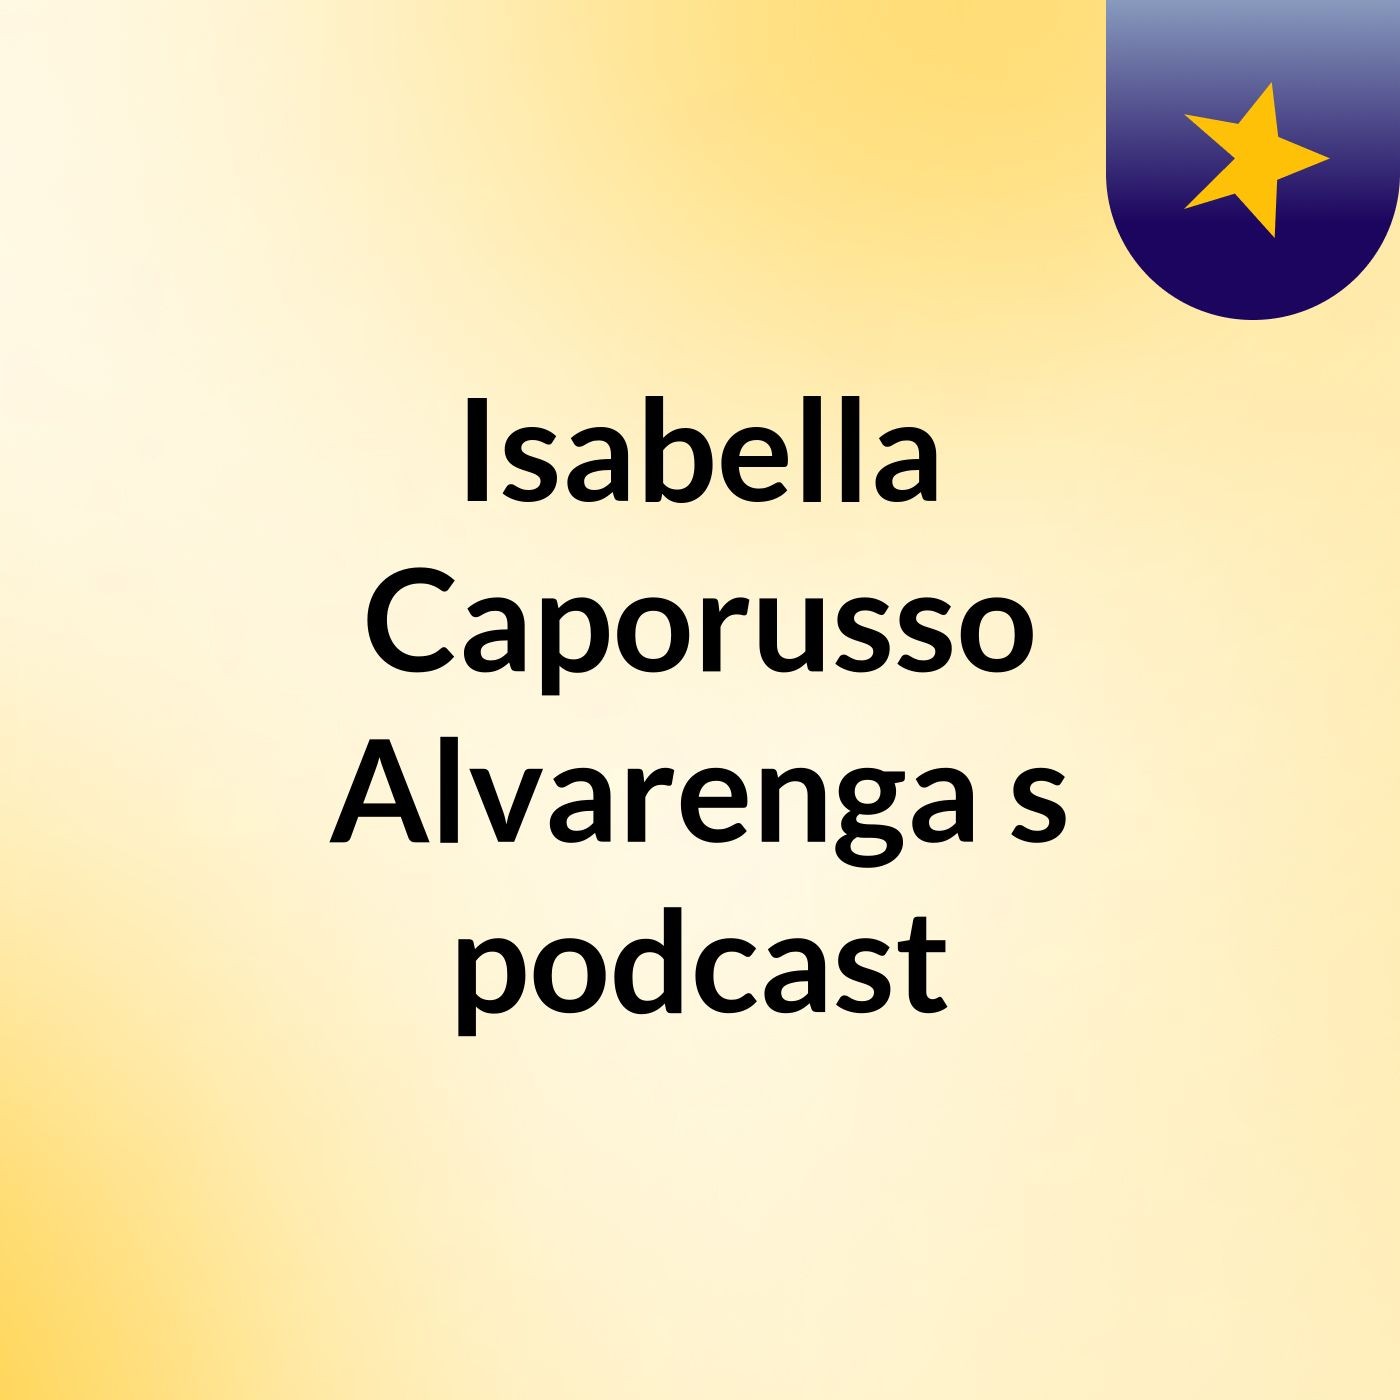 Isabella Caporusso Alvarenga's podcast